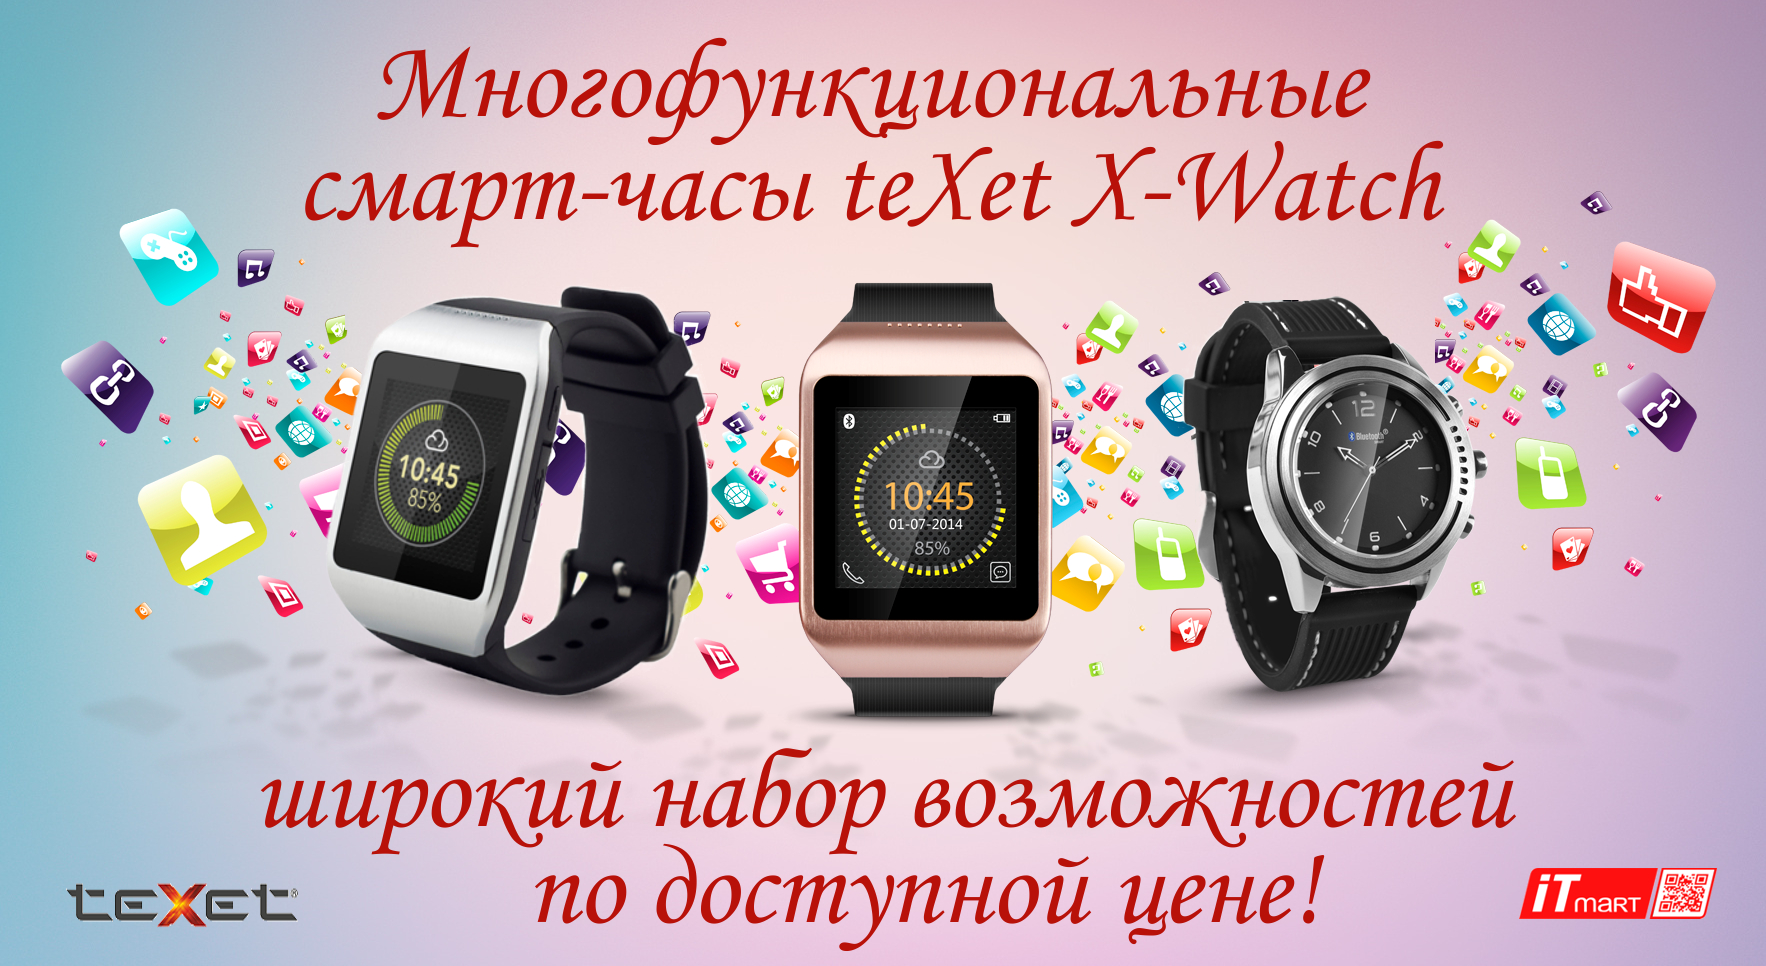 Смарт-часы Texet X-Watch уже в продаже в ITmart!